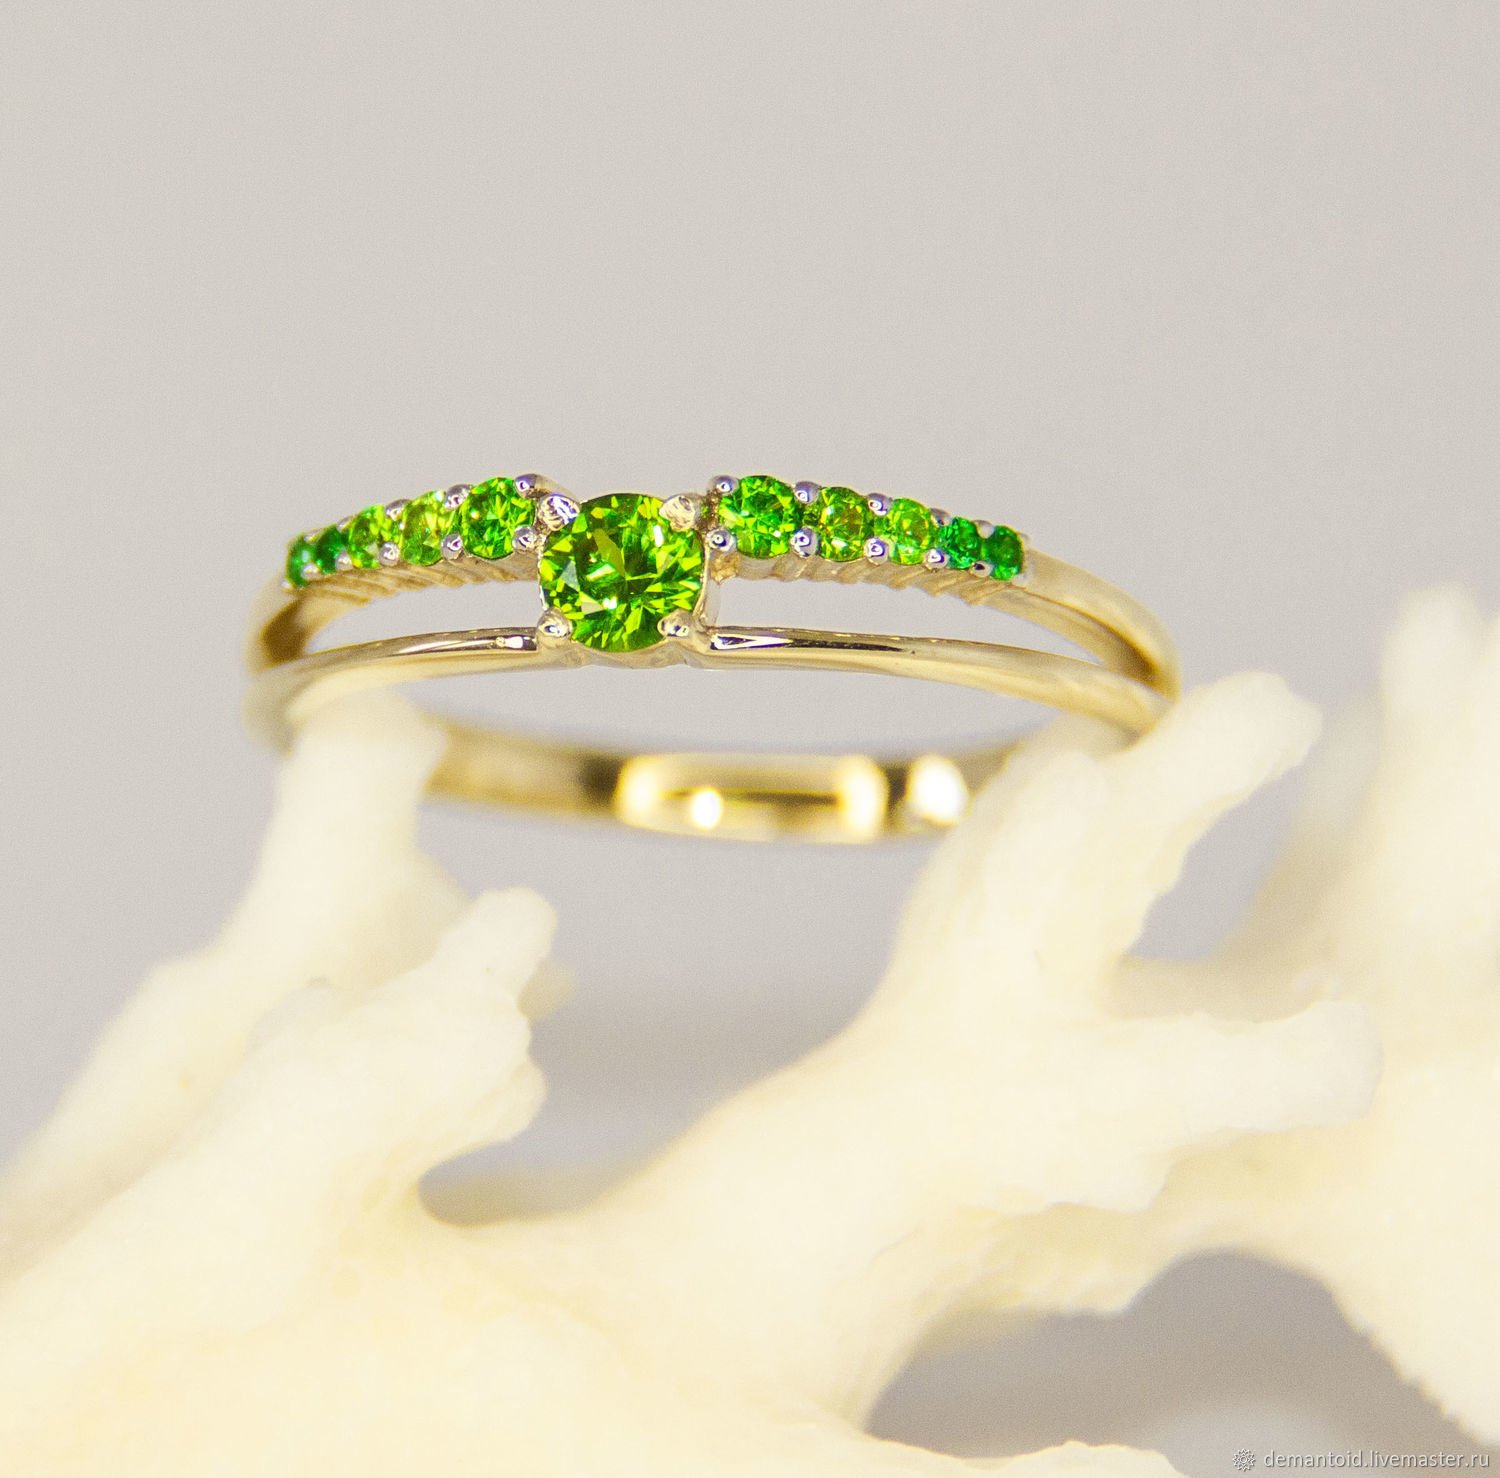 Купить кольцо в саратове. Тиффани демантоид. Кольцо под Тиффани изумруд Соколов. Кольцо золотое 585 с зеленым камнем. Красивые женские кольца.